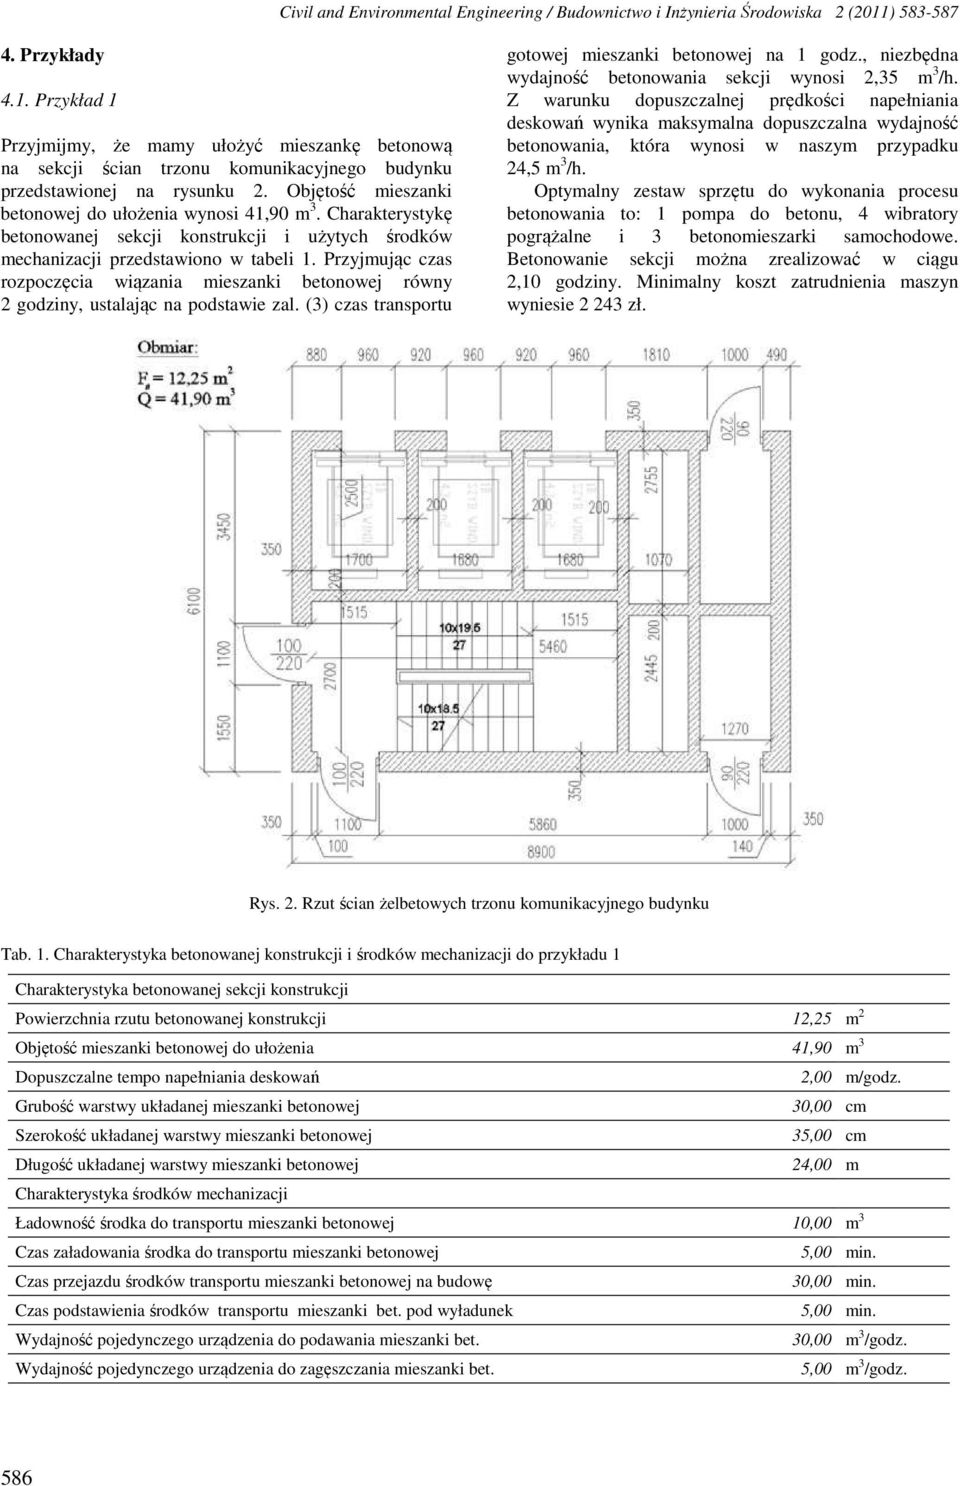 Charakterystykę betonowanej sekcji konstrukcji i użytych środków mechanizacji przedstawiono w tabeli.